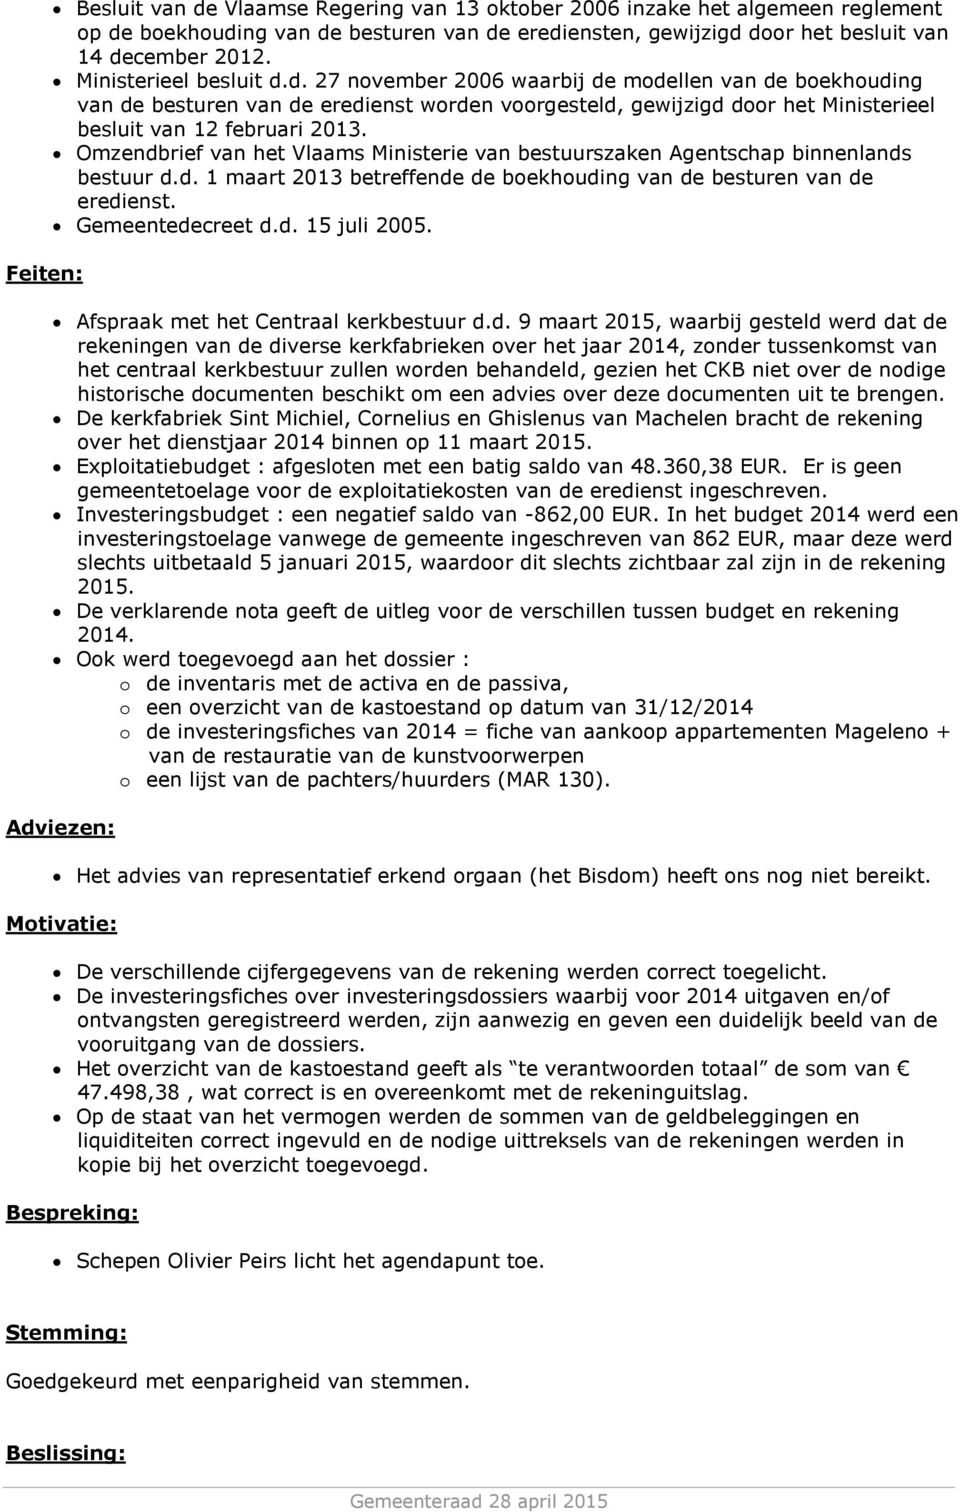 Omzendbrief van het Vlaams Ministerie van bestuurszaken Agentschap binnenlands bestuur d.d. 1 maart 2013 betreffende de boekhouding van de besturen van de eredienst. Gemeentedecreet d.d. 15 juli 2005.